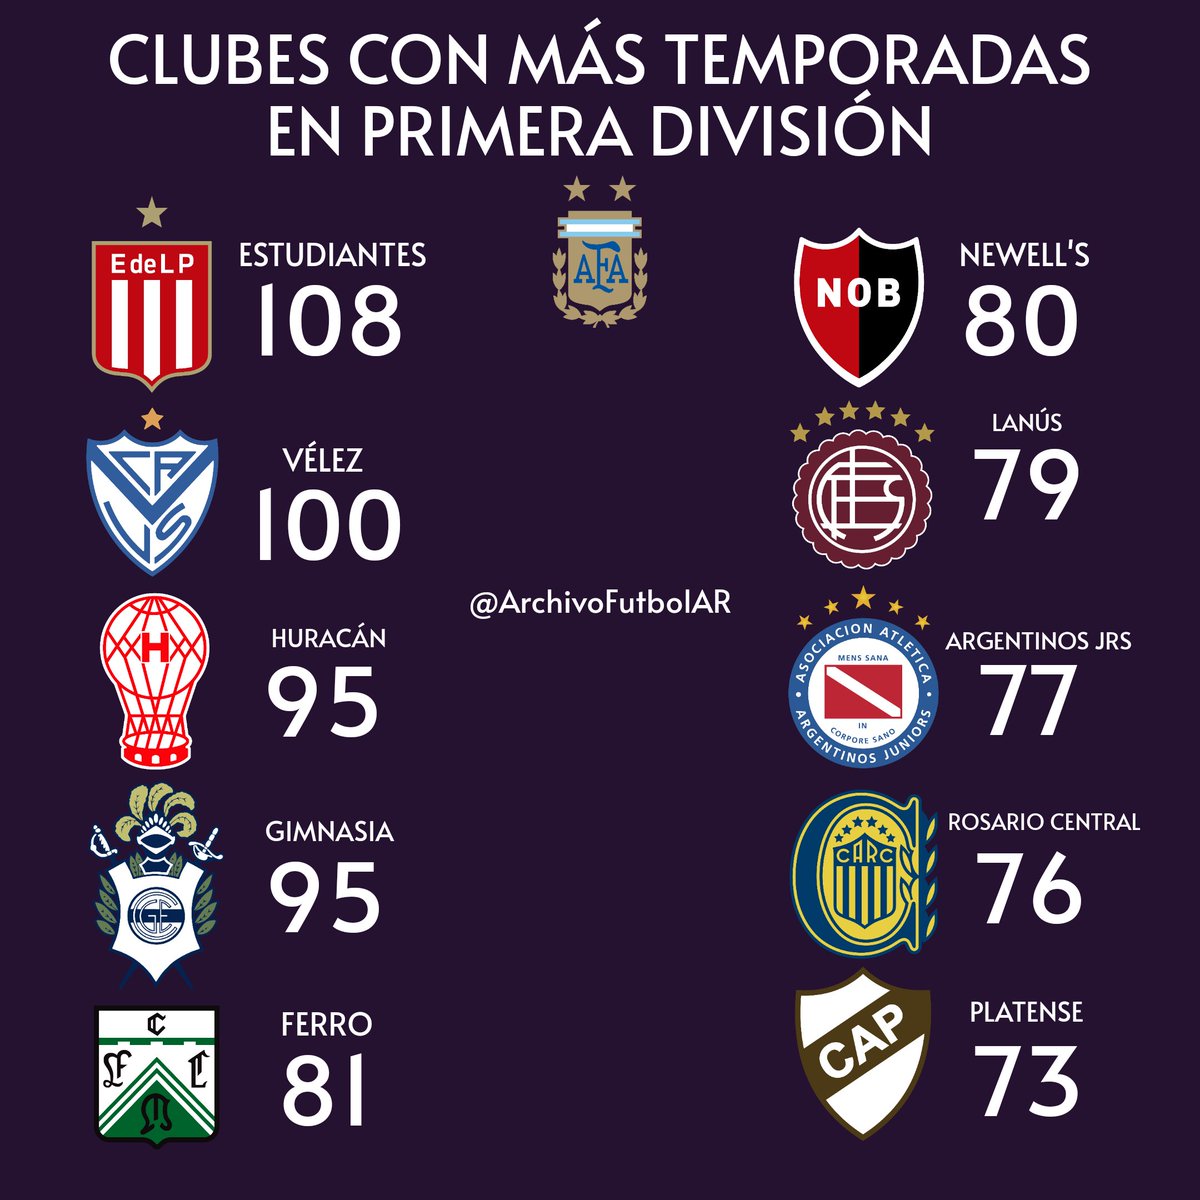 Twitter 上的 Archivo Fútbol："Quitando a "los 5️⃣ grandes" ... ¿Cuáles son los con más temporadas en la Primera del fútbol argentino? #EDLP #Velez #Huracan #Ferro #Newells #Lanus #AAAJ #